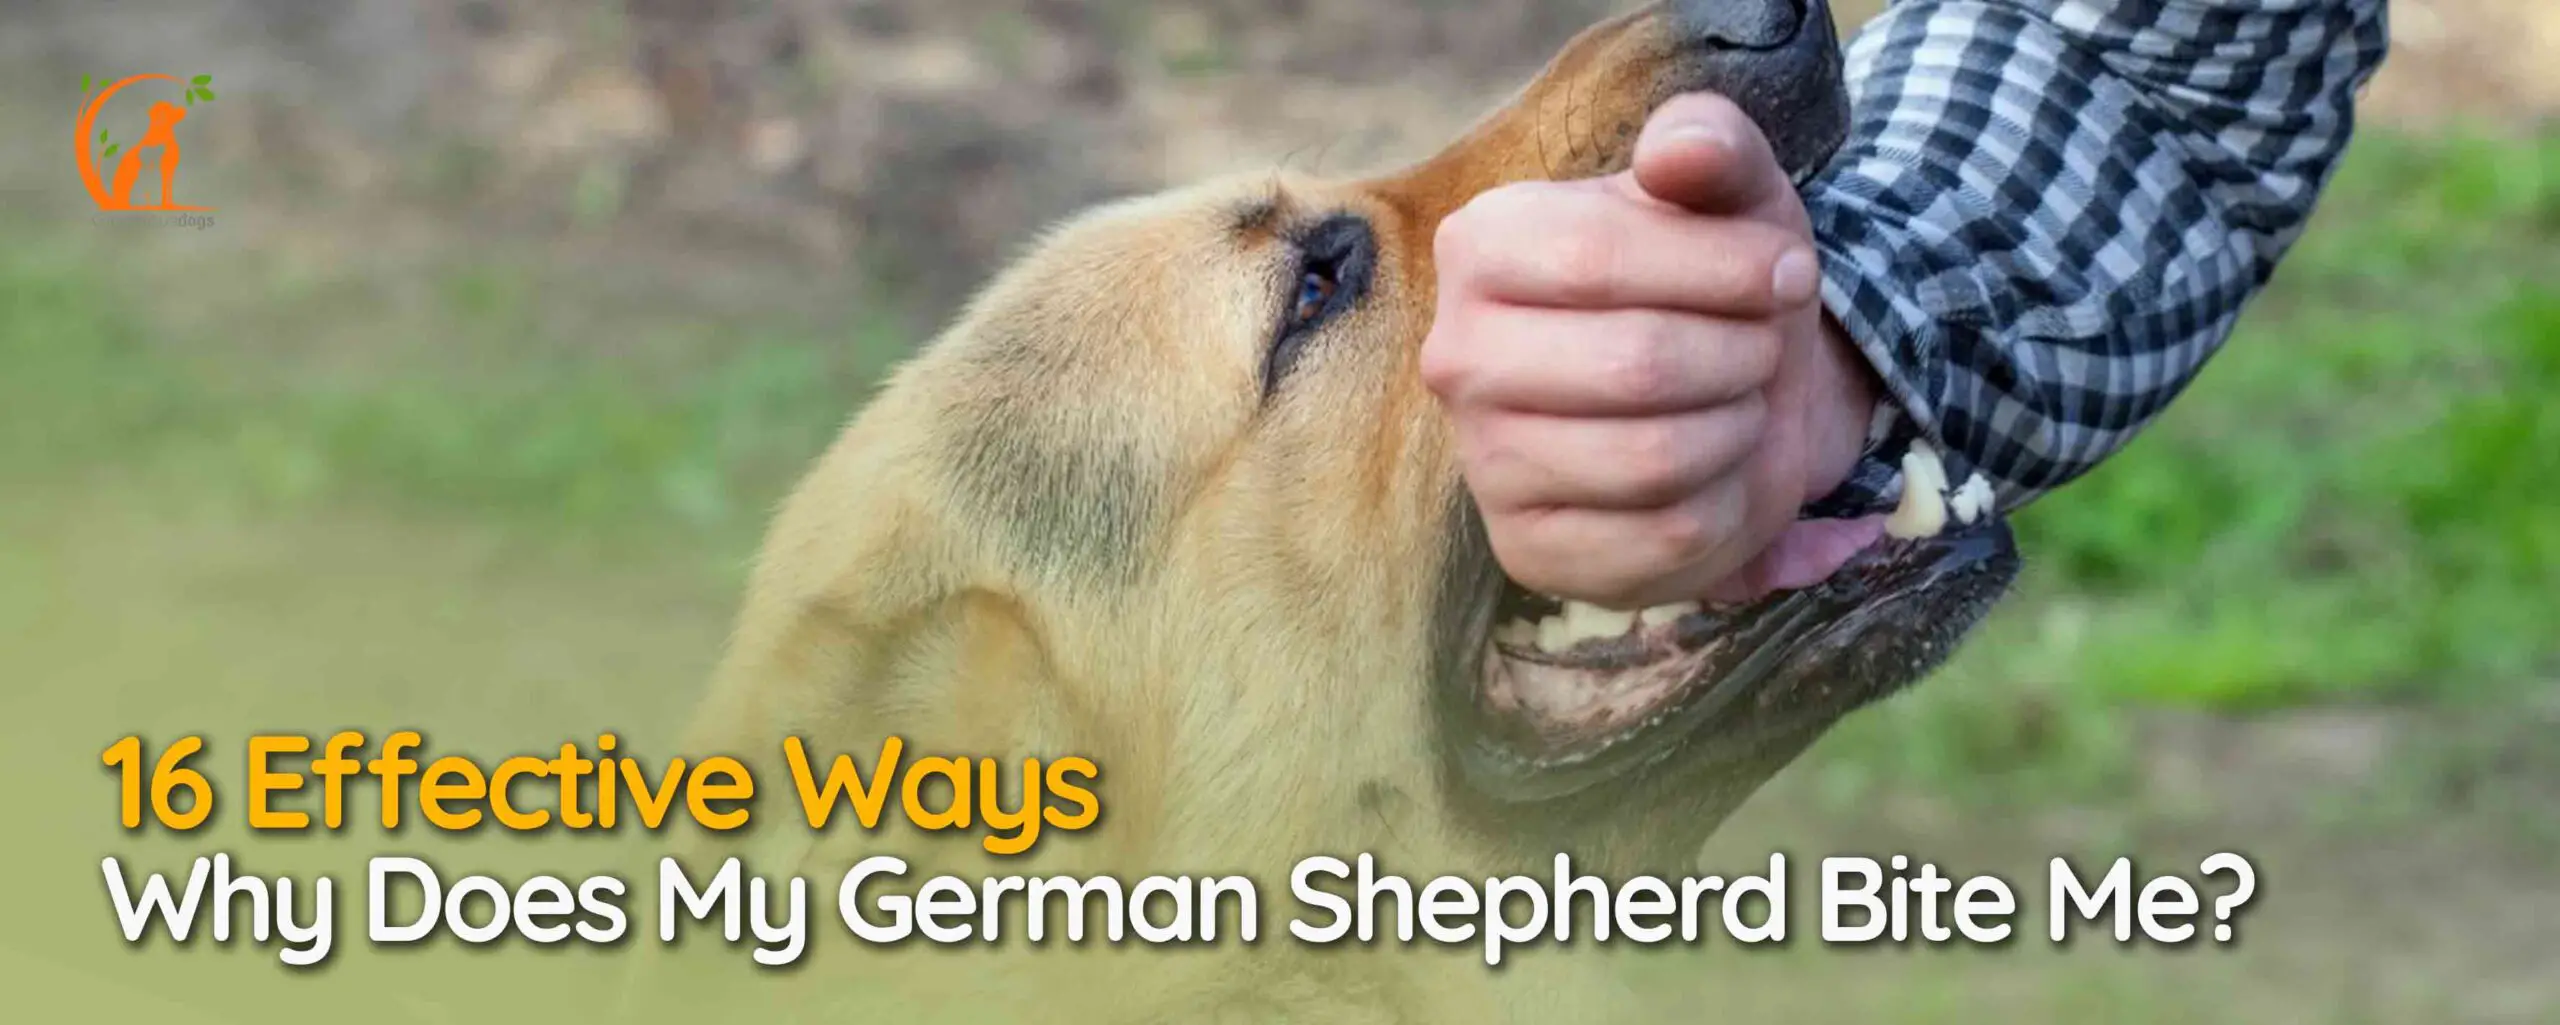 Why Does My German Shepherd Bite Me